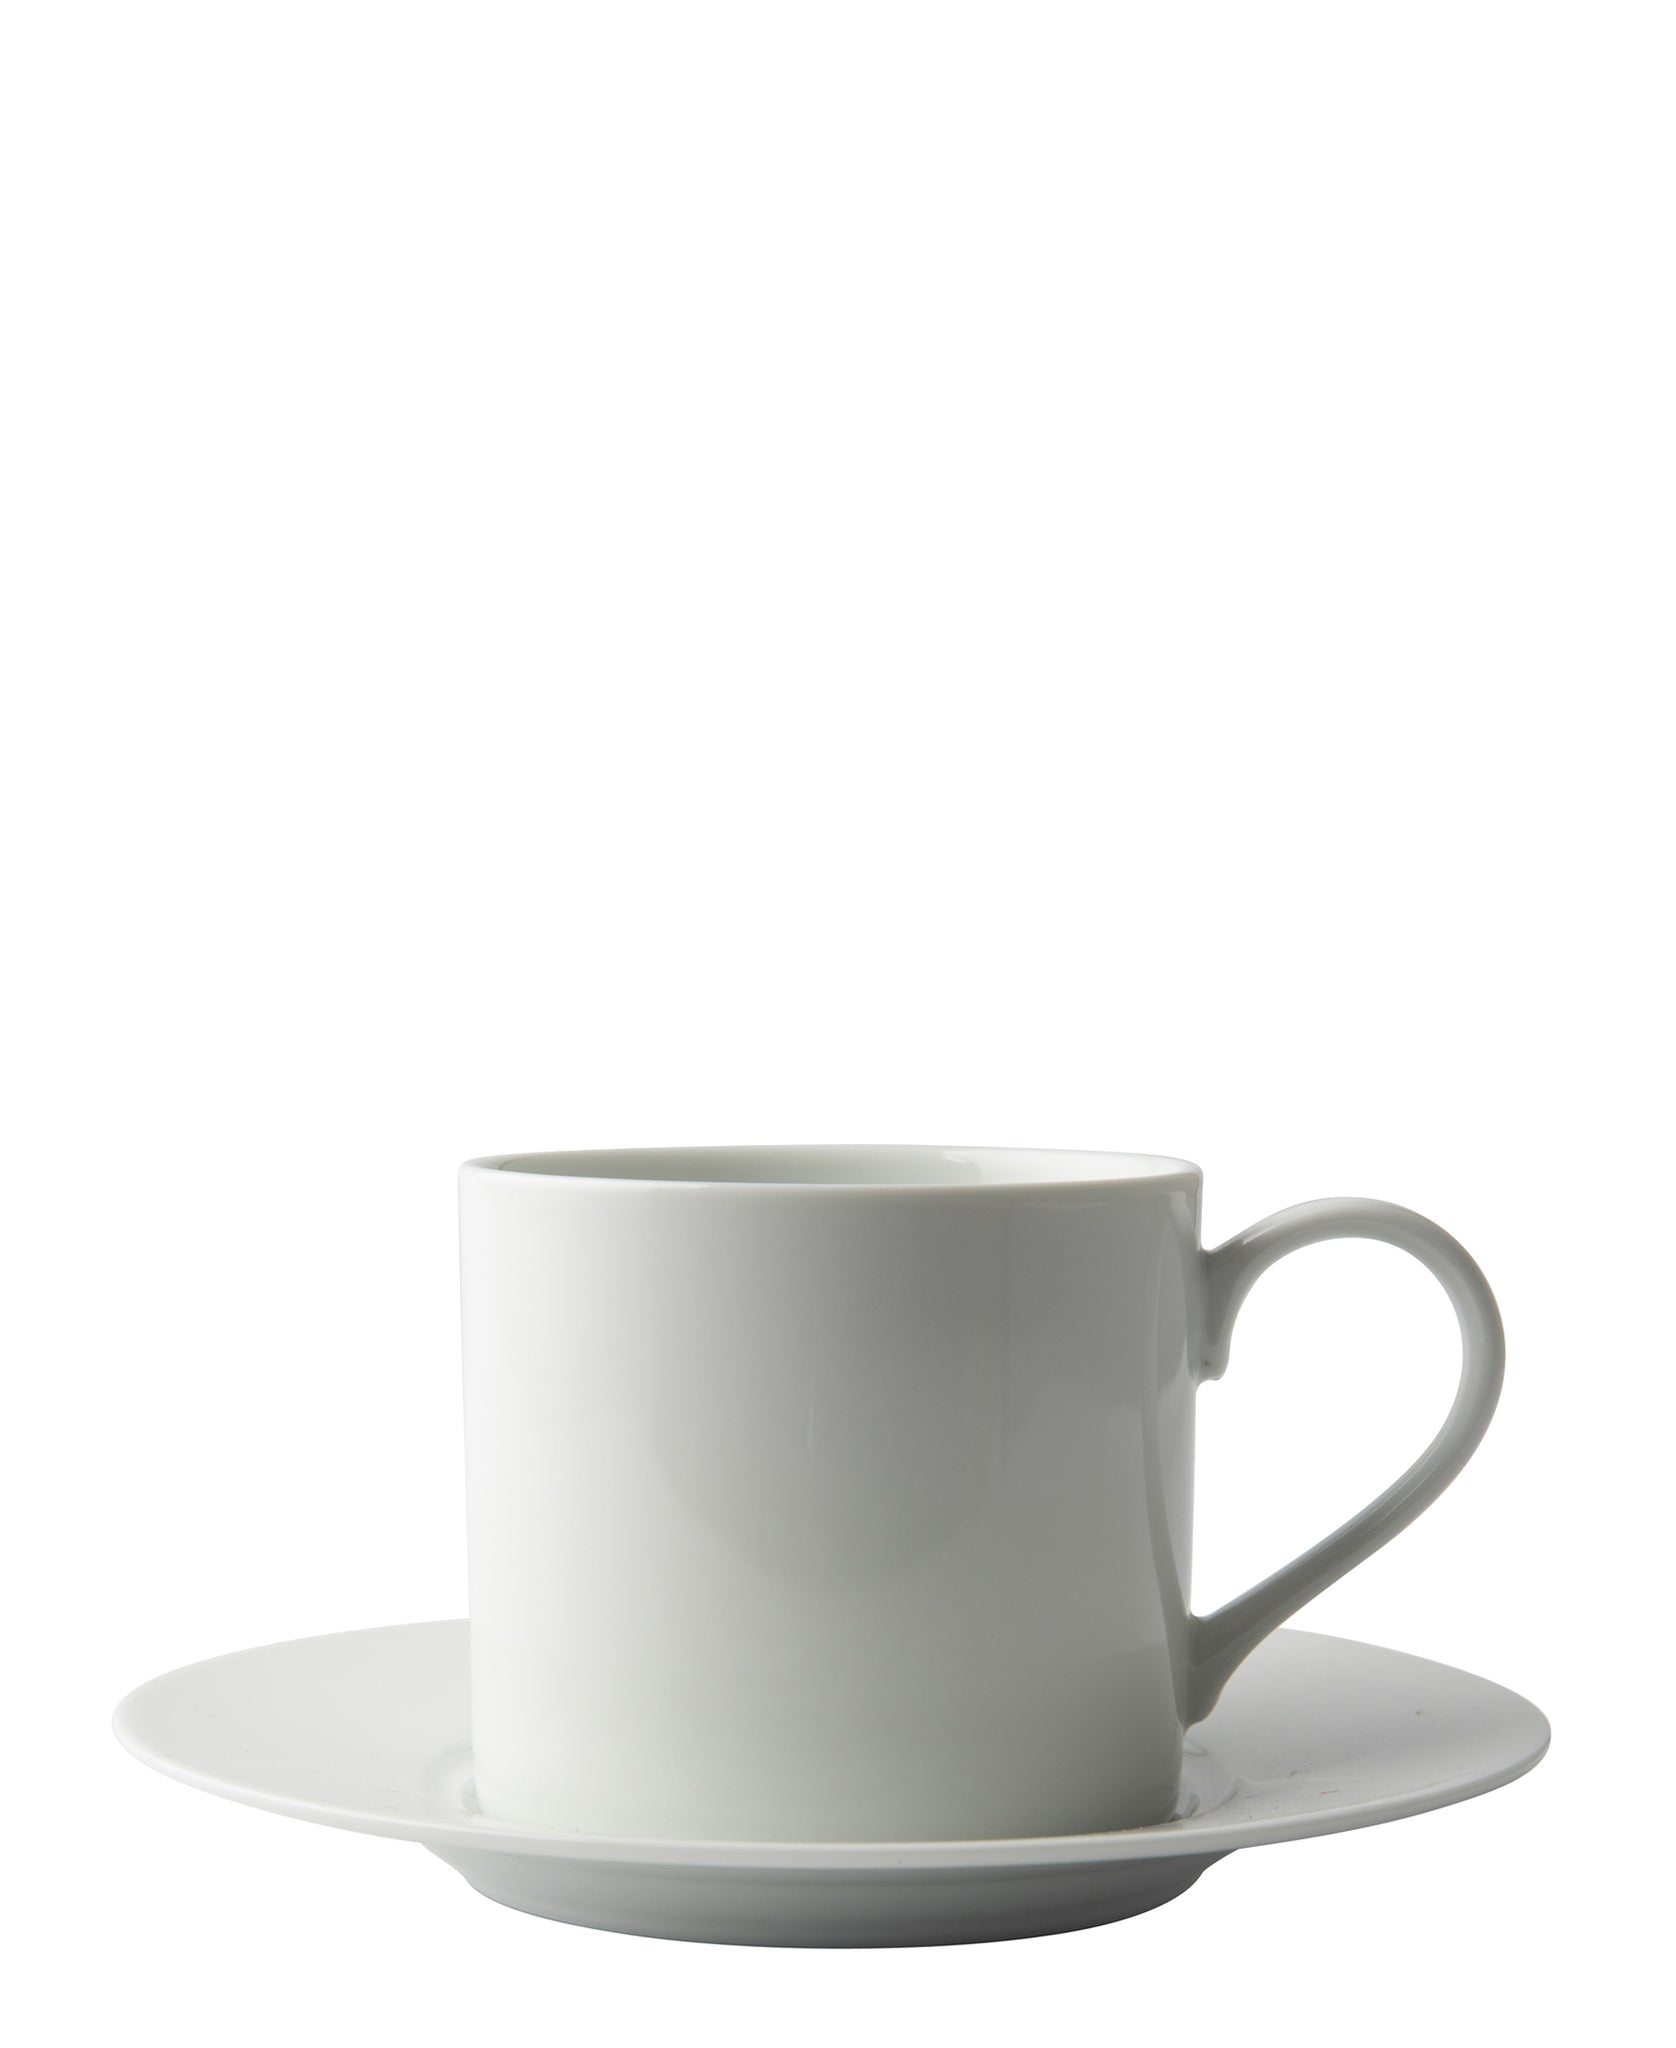 Omada Maxim Cappuccino Cup & Saucer 4 Piece - White